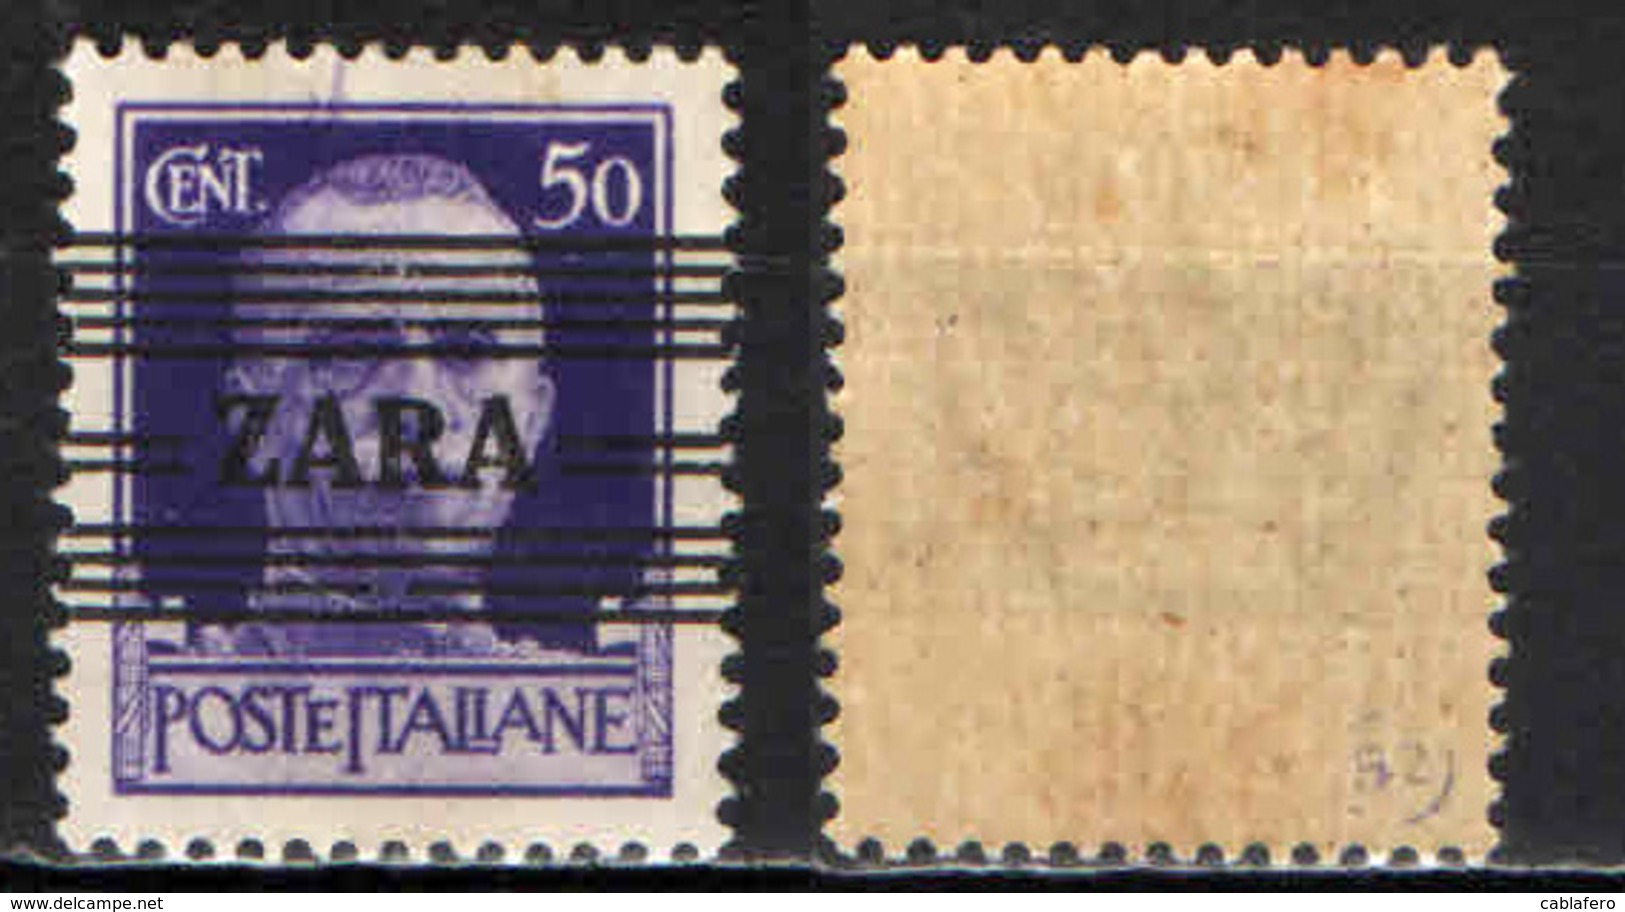 ITALIA - OCCUPAZIONE TEDESCA - ZARA - 1943 - SOVRASTAMPA - 50 CENT. - MNH - Occ. Allemande: Zara